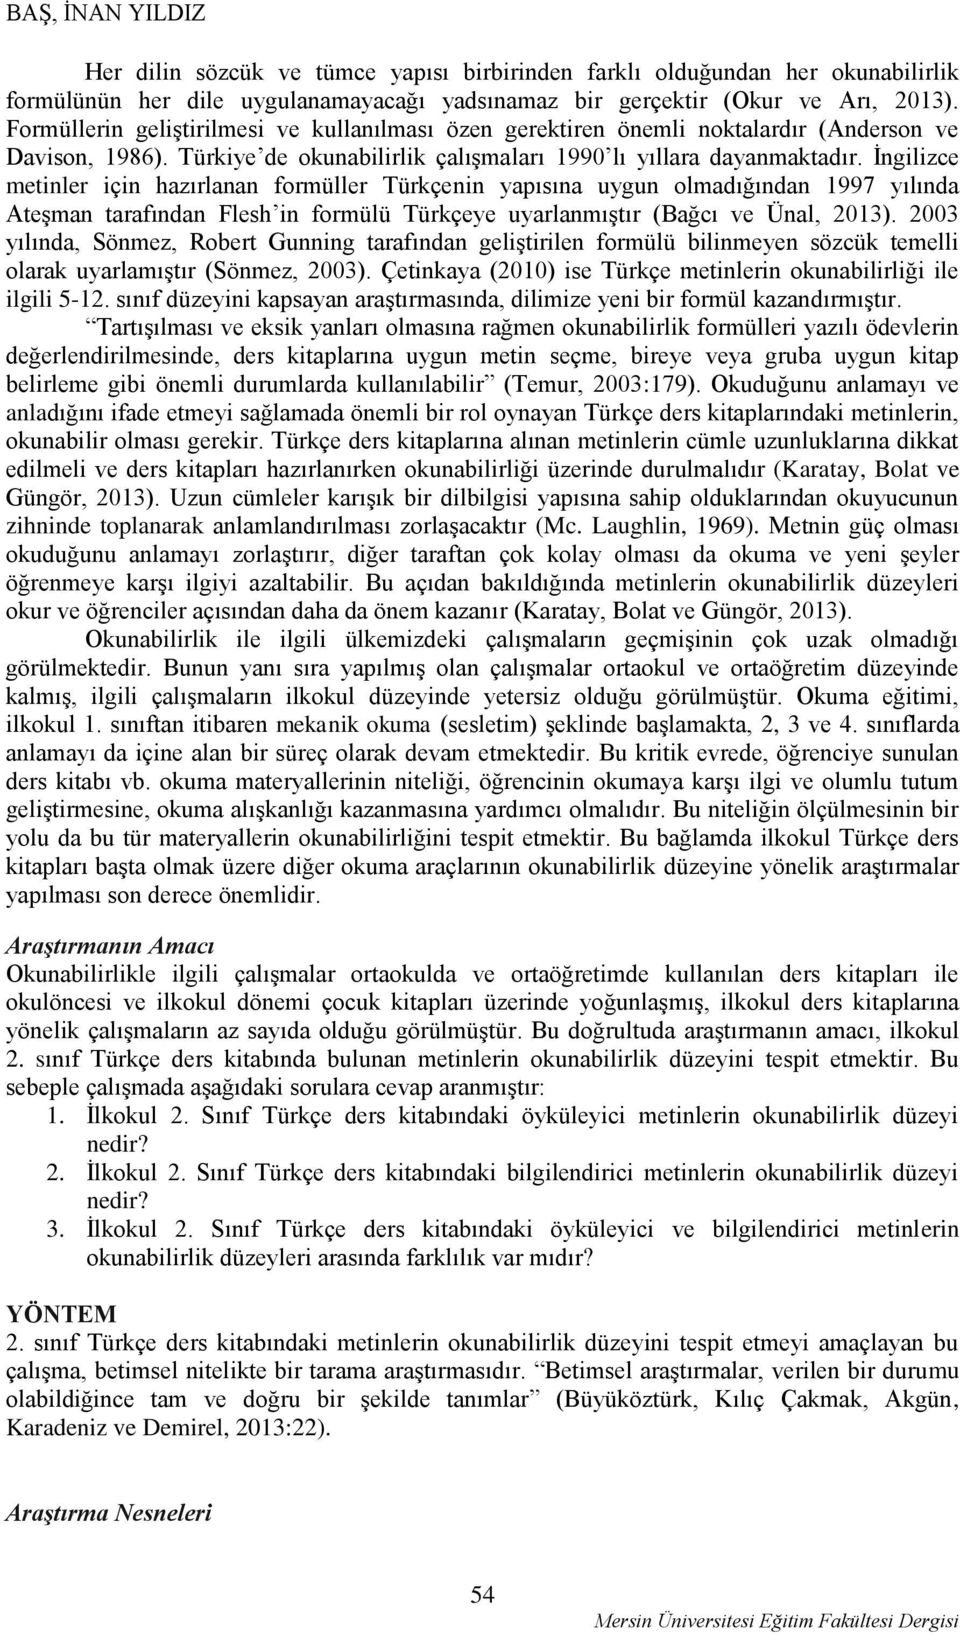 İngilizce metinler için hazırlanan formüller Türkçenin yapısına uygun olmadığından 1997 yılında Ateşman tarafından Flesh in formülü Türkçeye uyarlanmıştır (Bağcı ve Ünal, 2013).